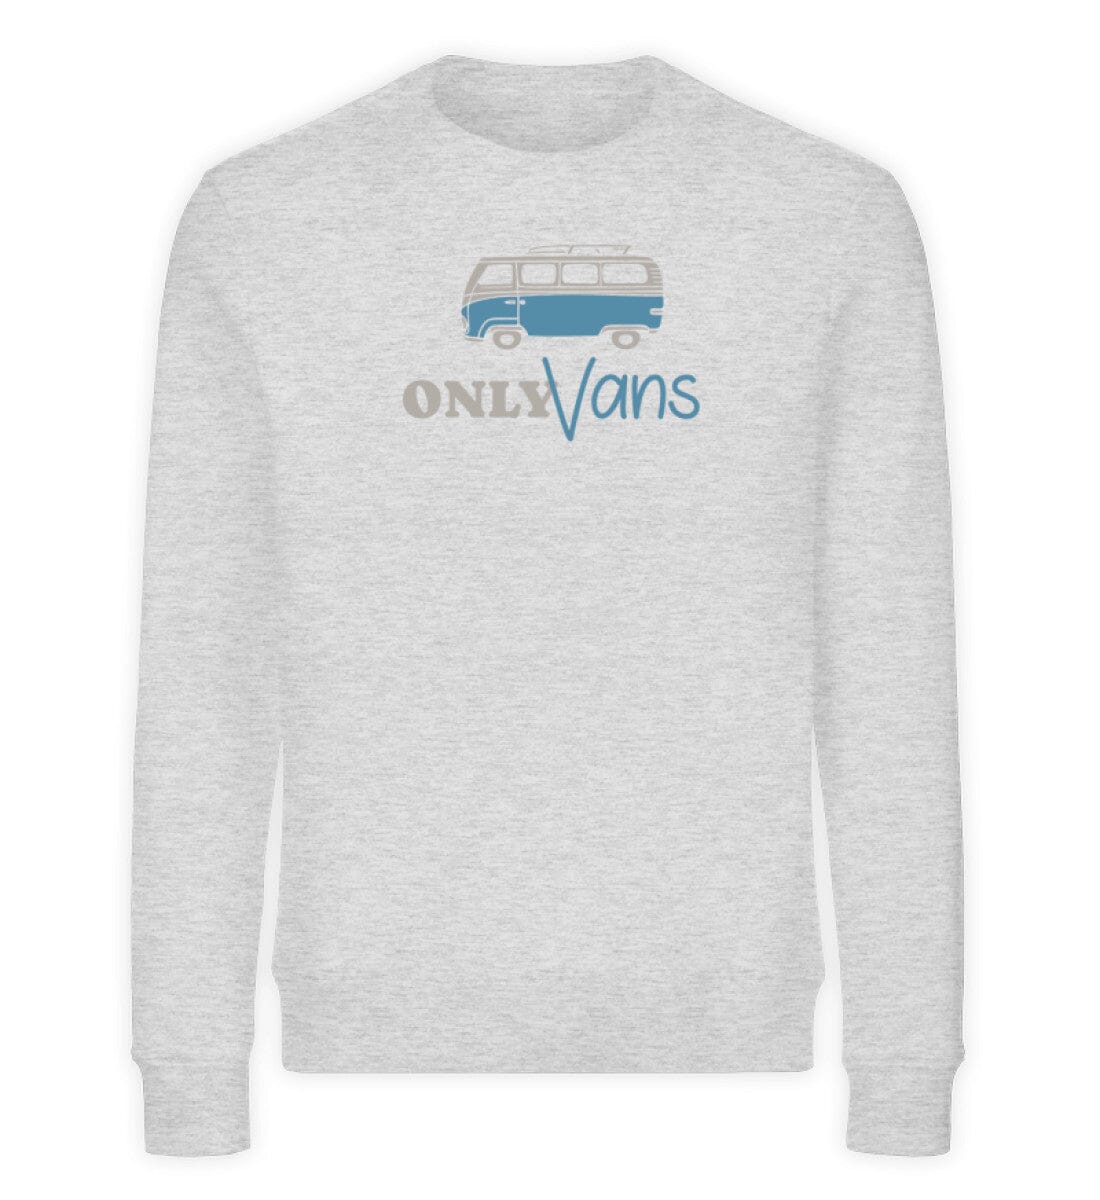 Only Vans - Bio Unisex Sweatshirt